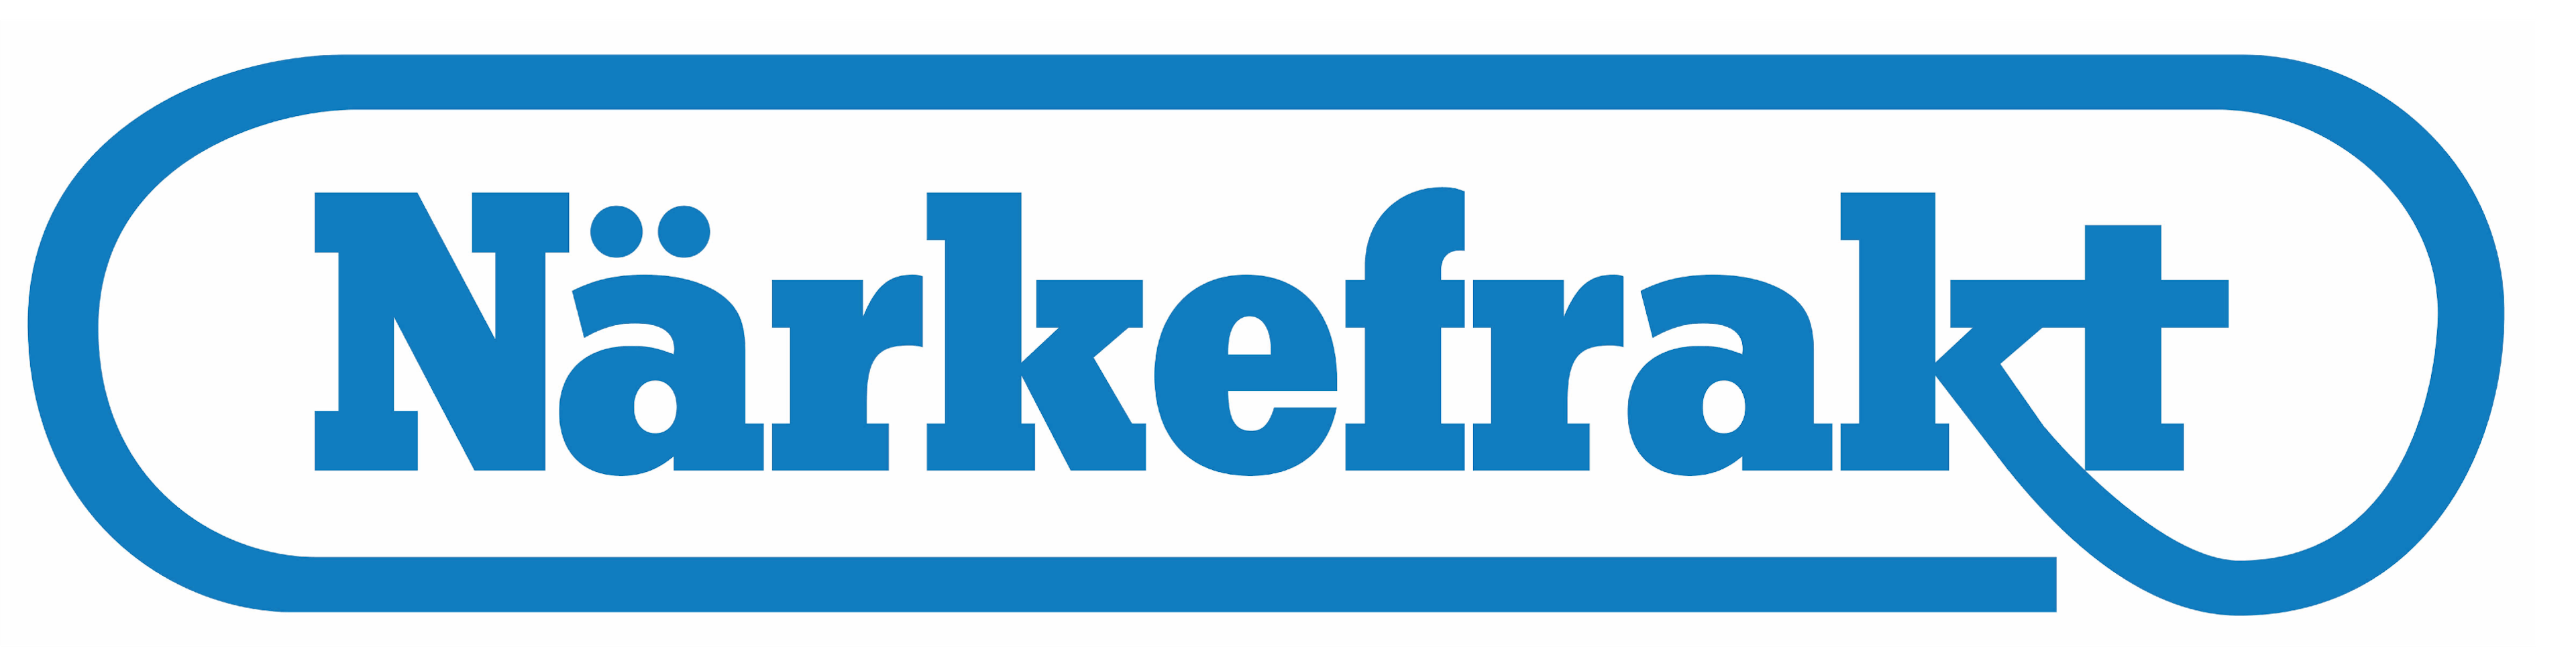 Närkefrakt, Sweden, logo